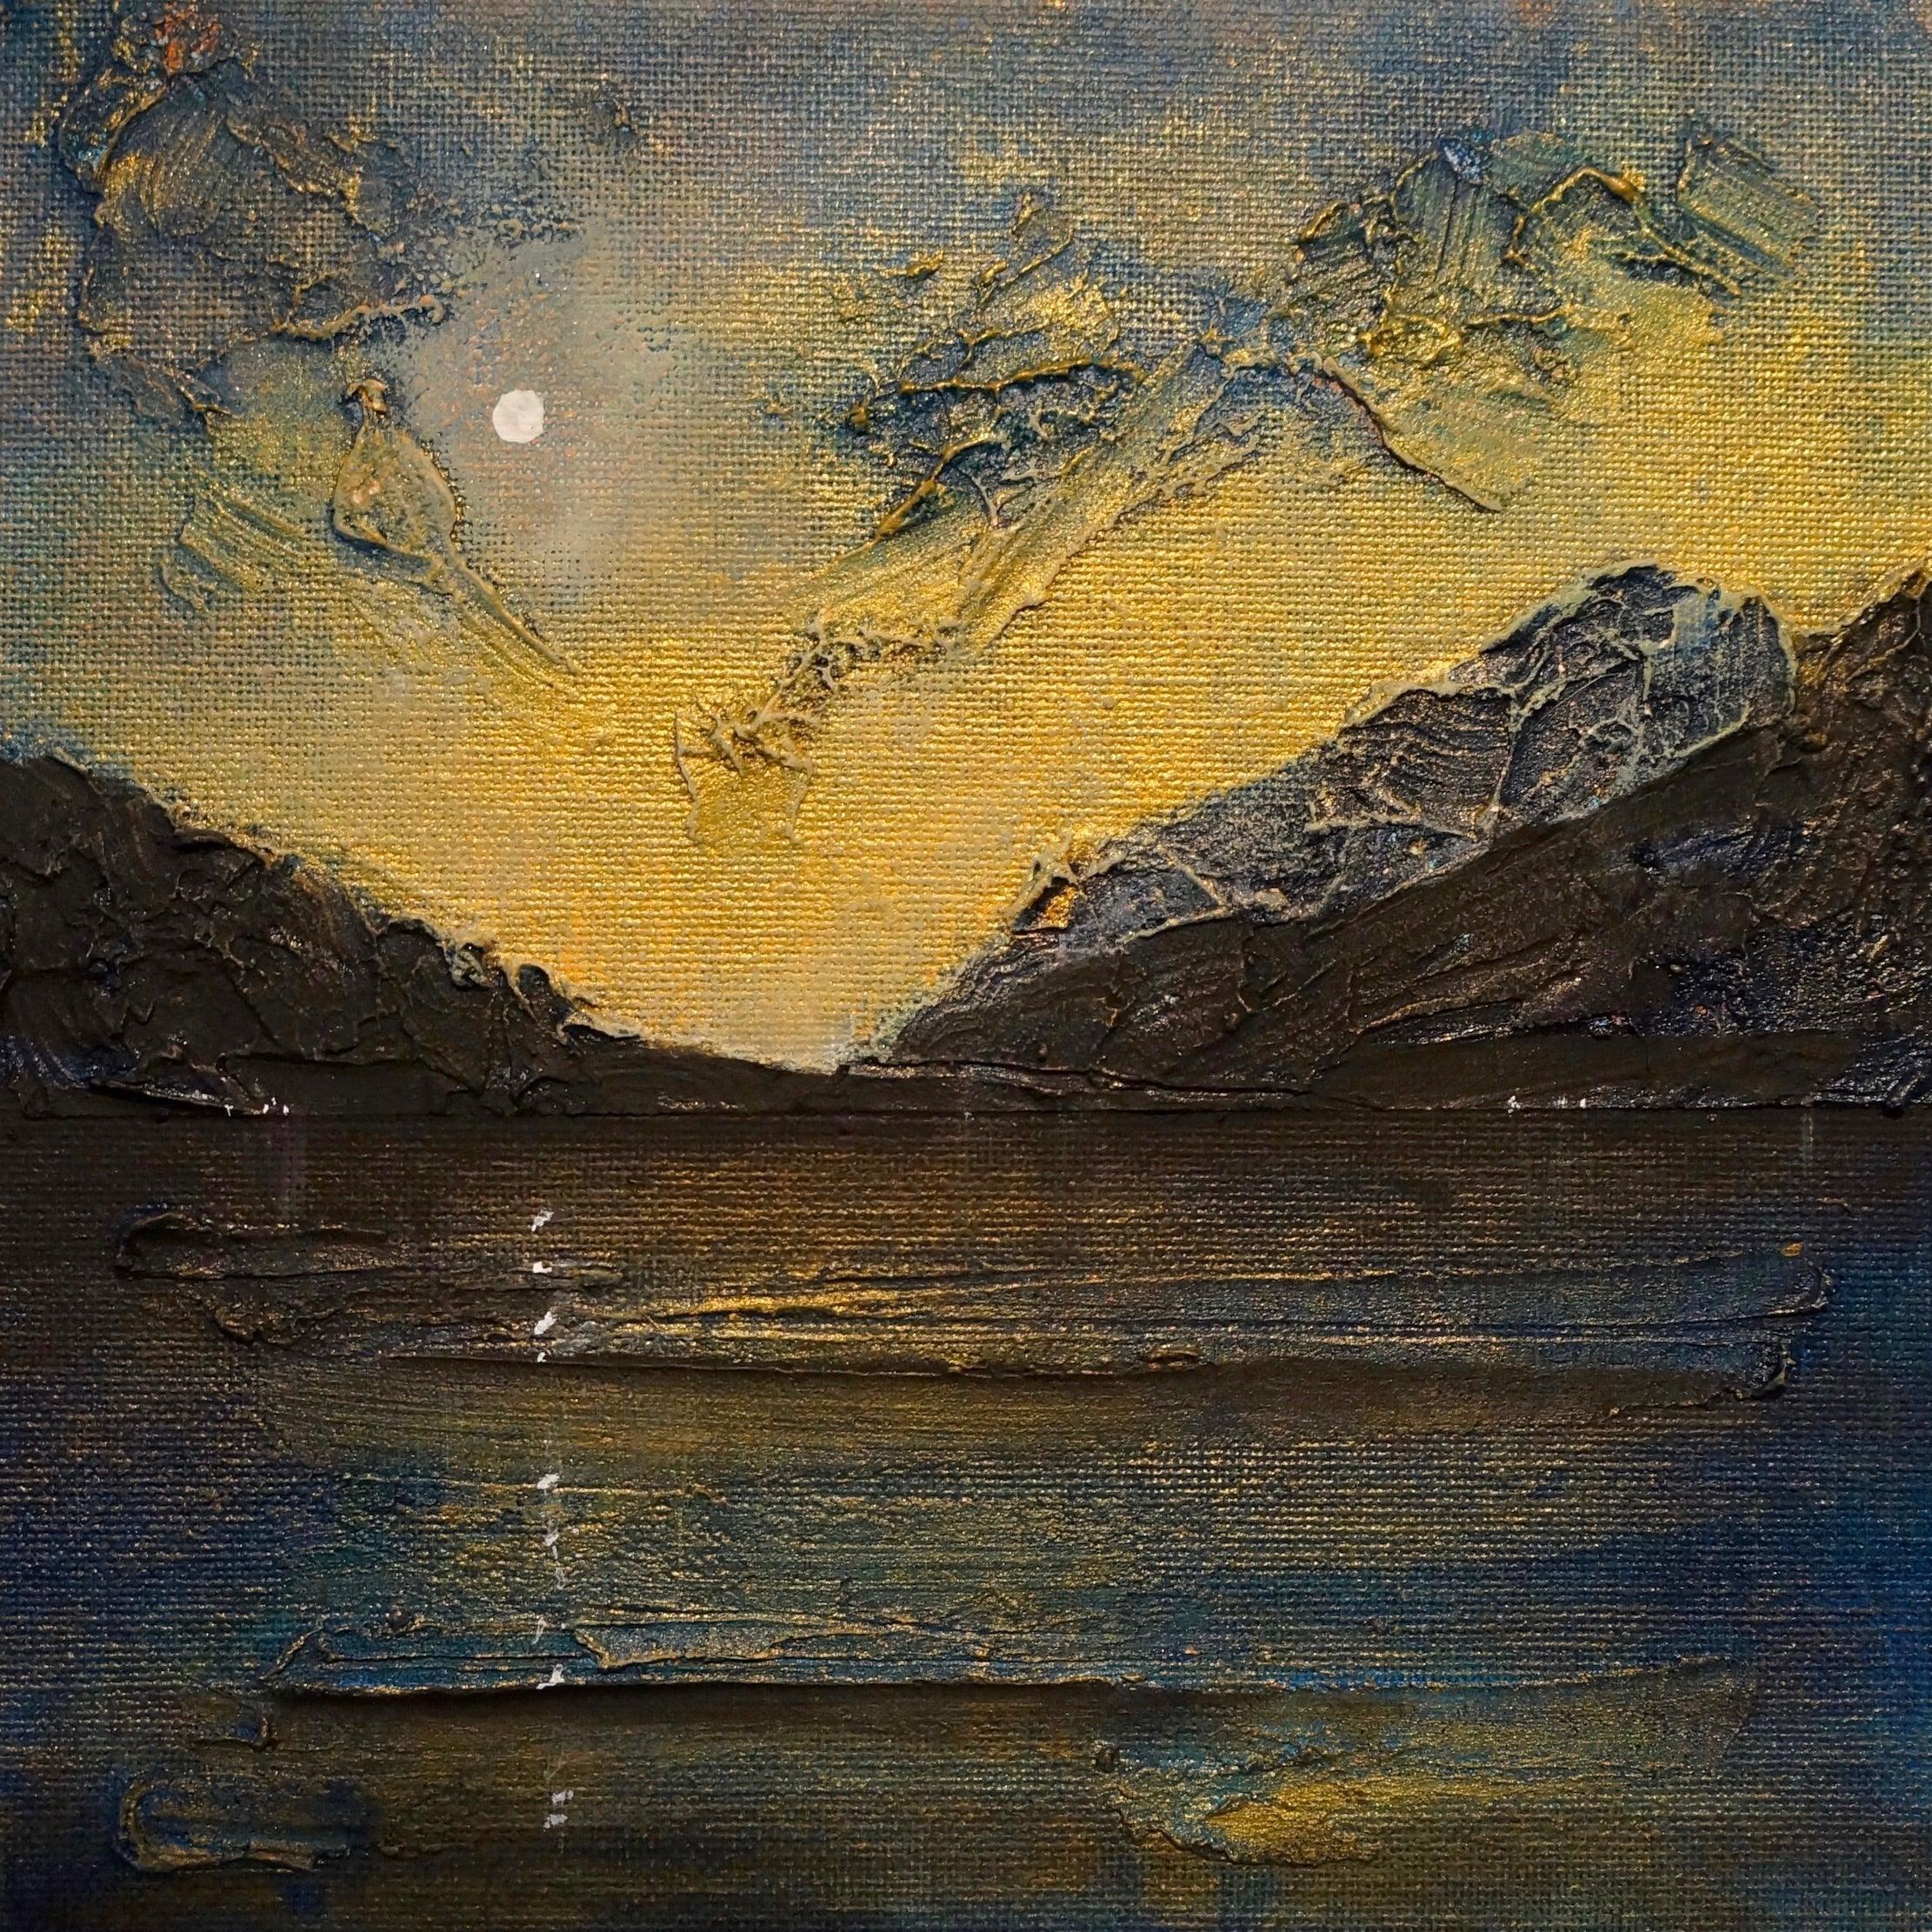 Loch Lomond Moonlight Scotland Original Landscape Painting